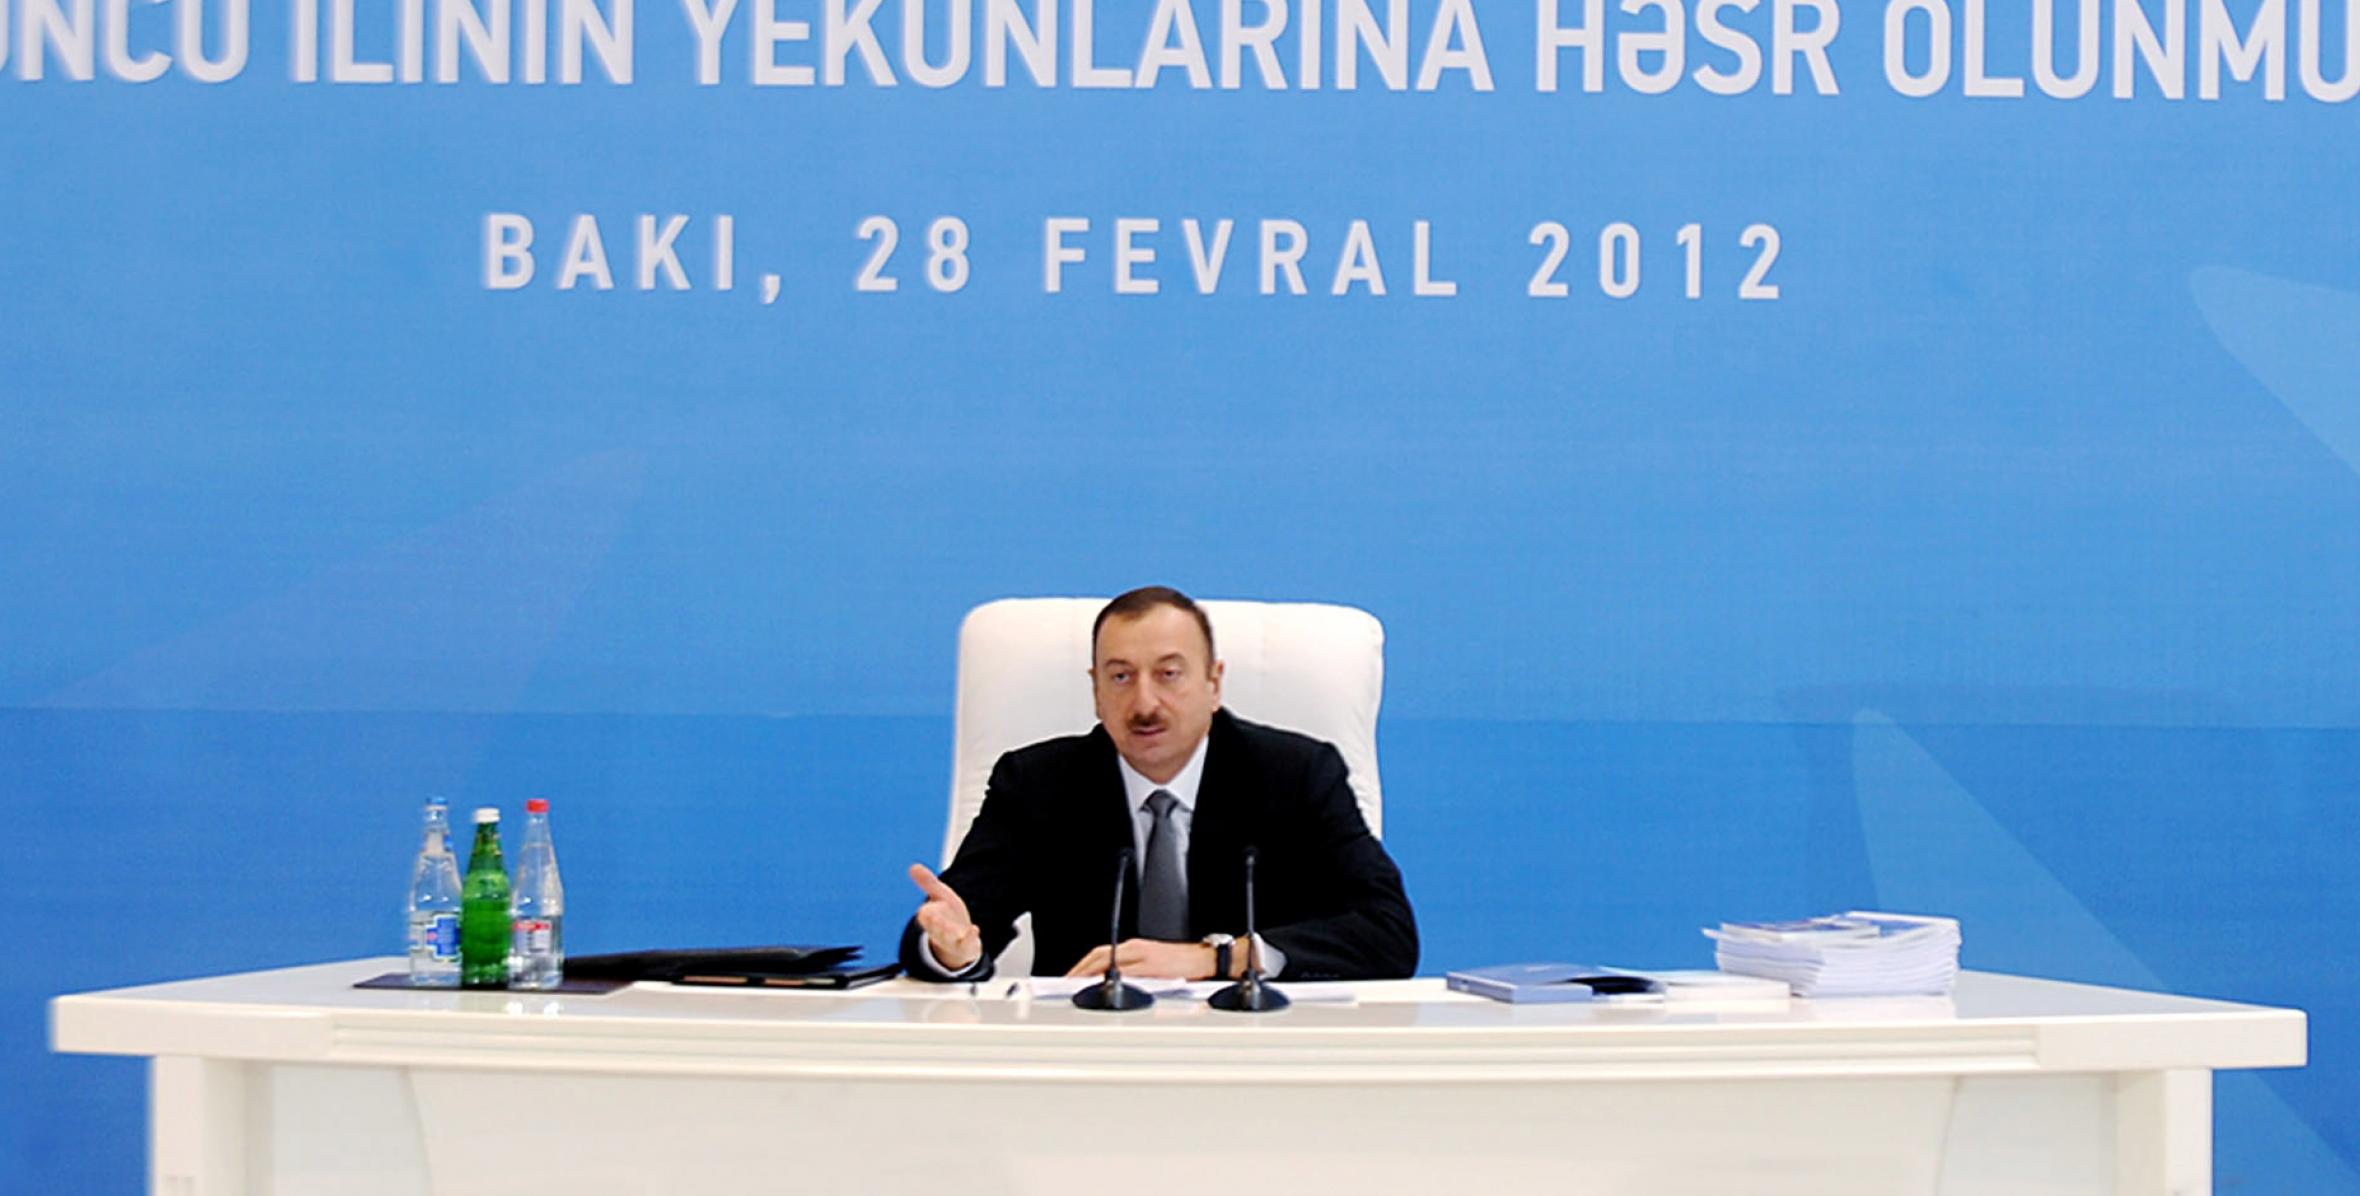 Заключительная речь Ильхама Алиева на конференции, посвященной итогам третьего года реализации «Государственной программы социально-экономического развития регионов Азербайджанской Республики в 2009-2013 годах»